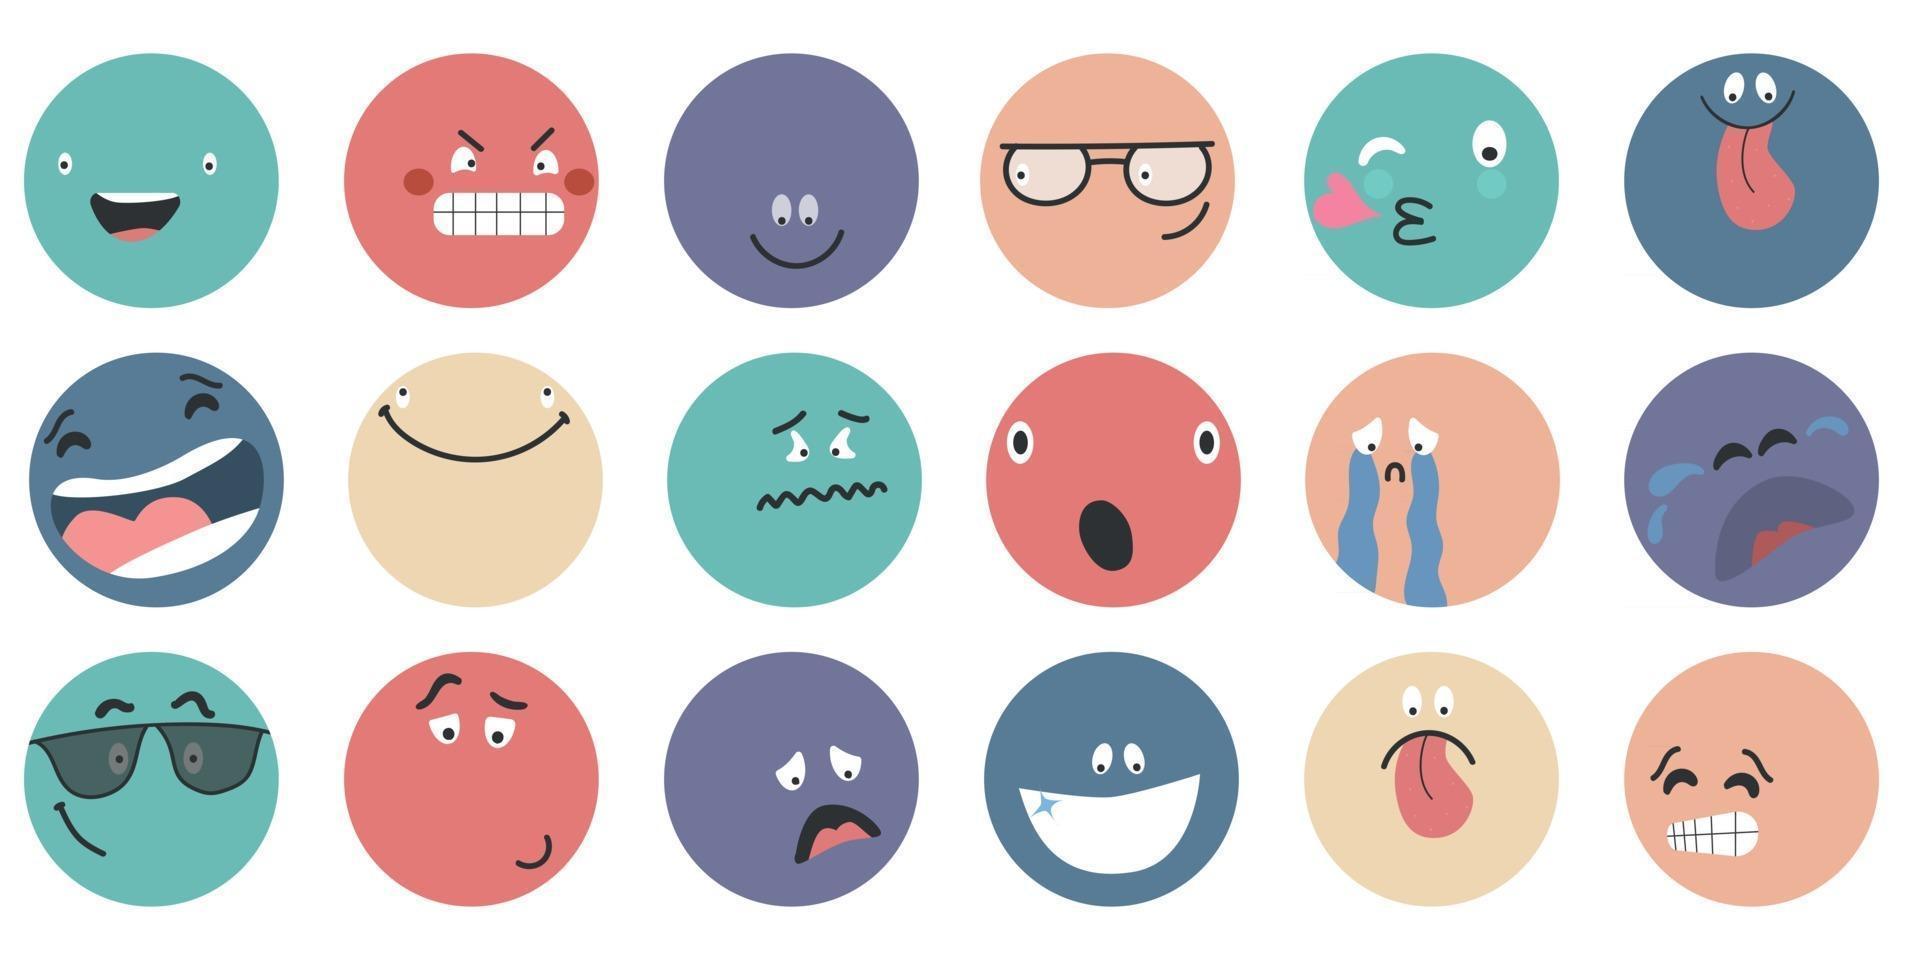 Caras cómicas abstractas redondas con diversas emociones, diferentes personajes coloridos vector